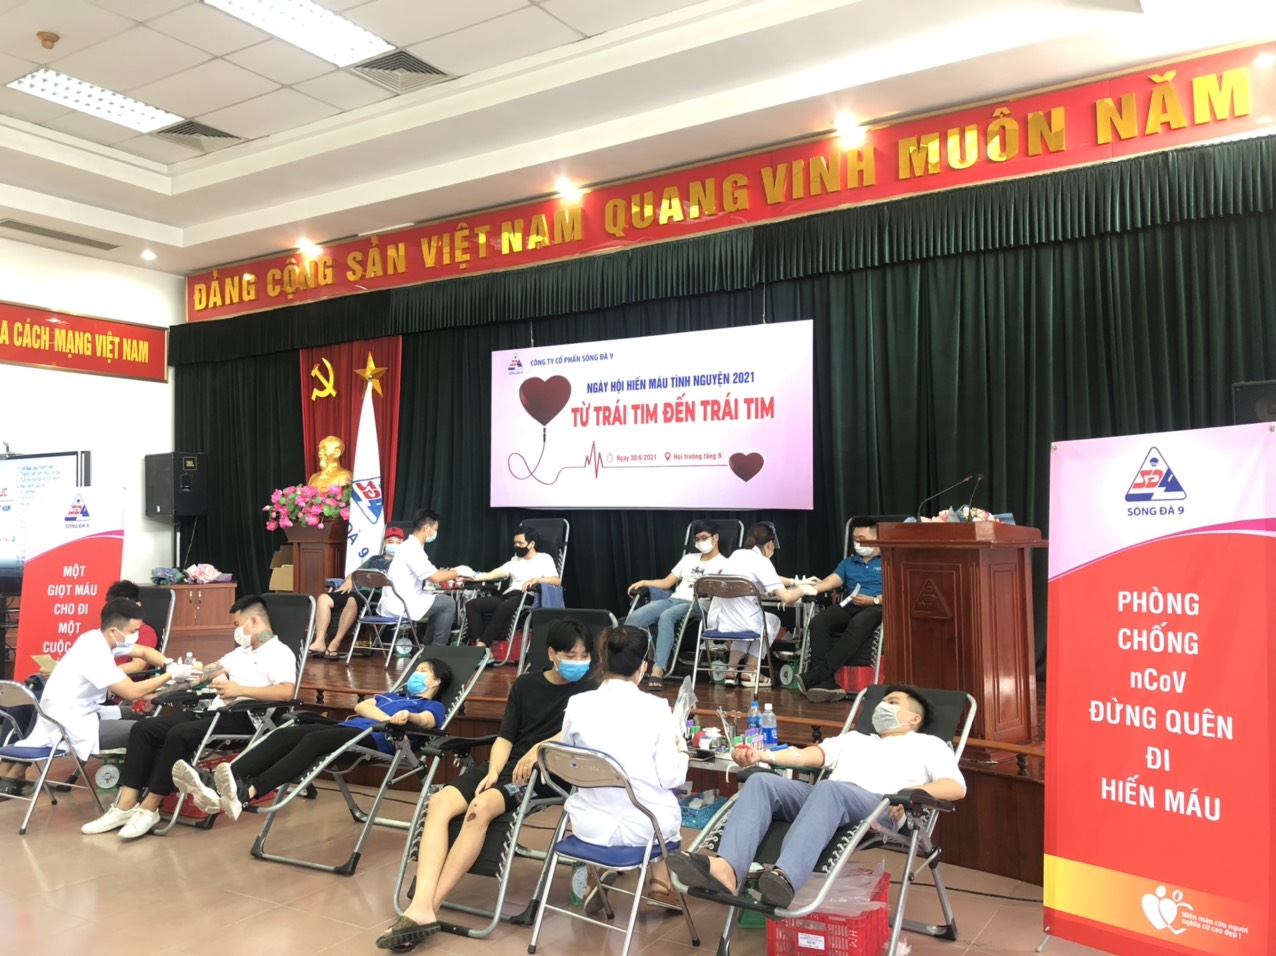 SD9 tổ chức ngày hội hiến máu tình nguyện năm 2021 - Từ trái tim đến trái tim